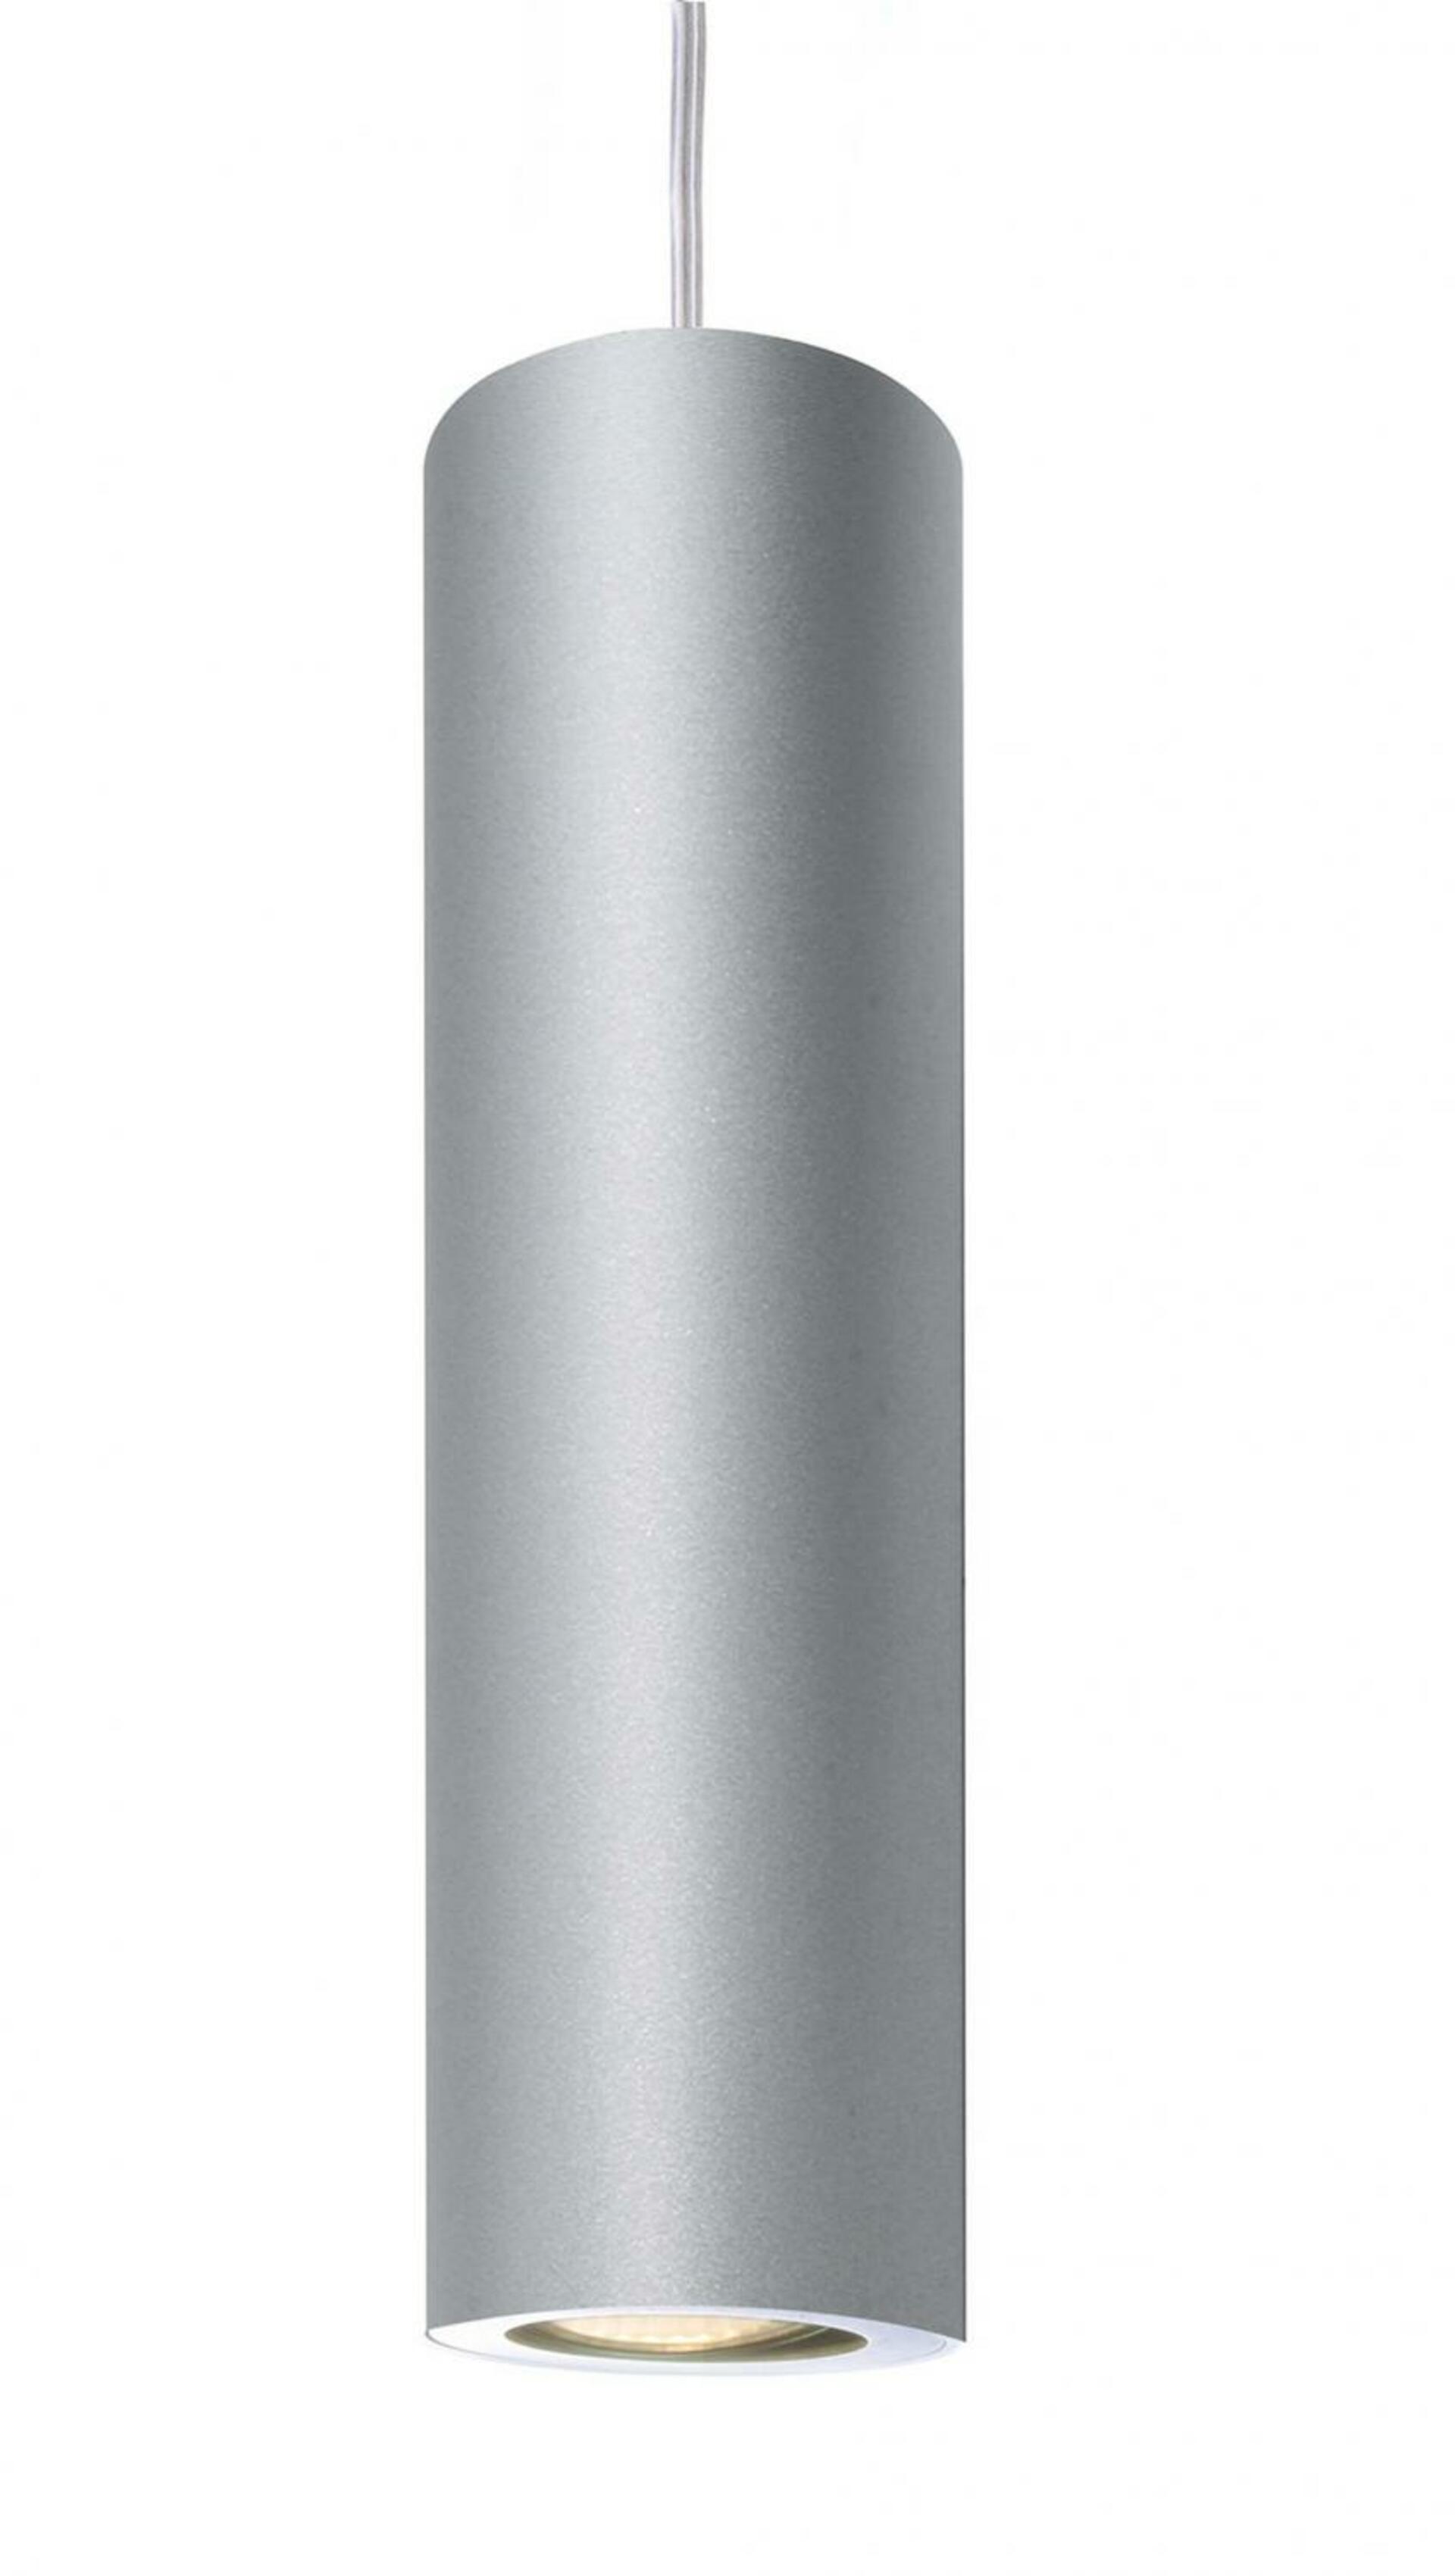 Light Impressions Deko-Light závěsné svítidlo Barro 220-240V AC/50-60Hz GU10 1x max. 50,00 W stříbrná 299365